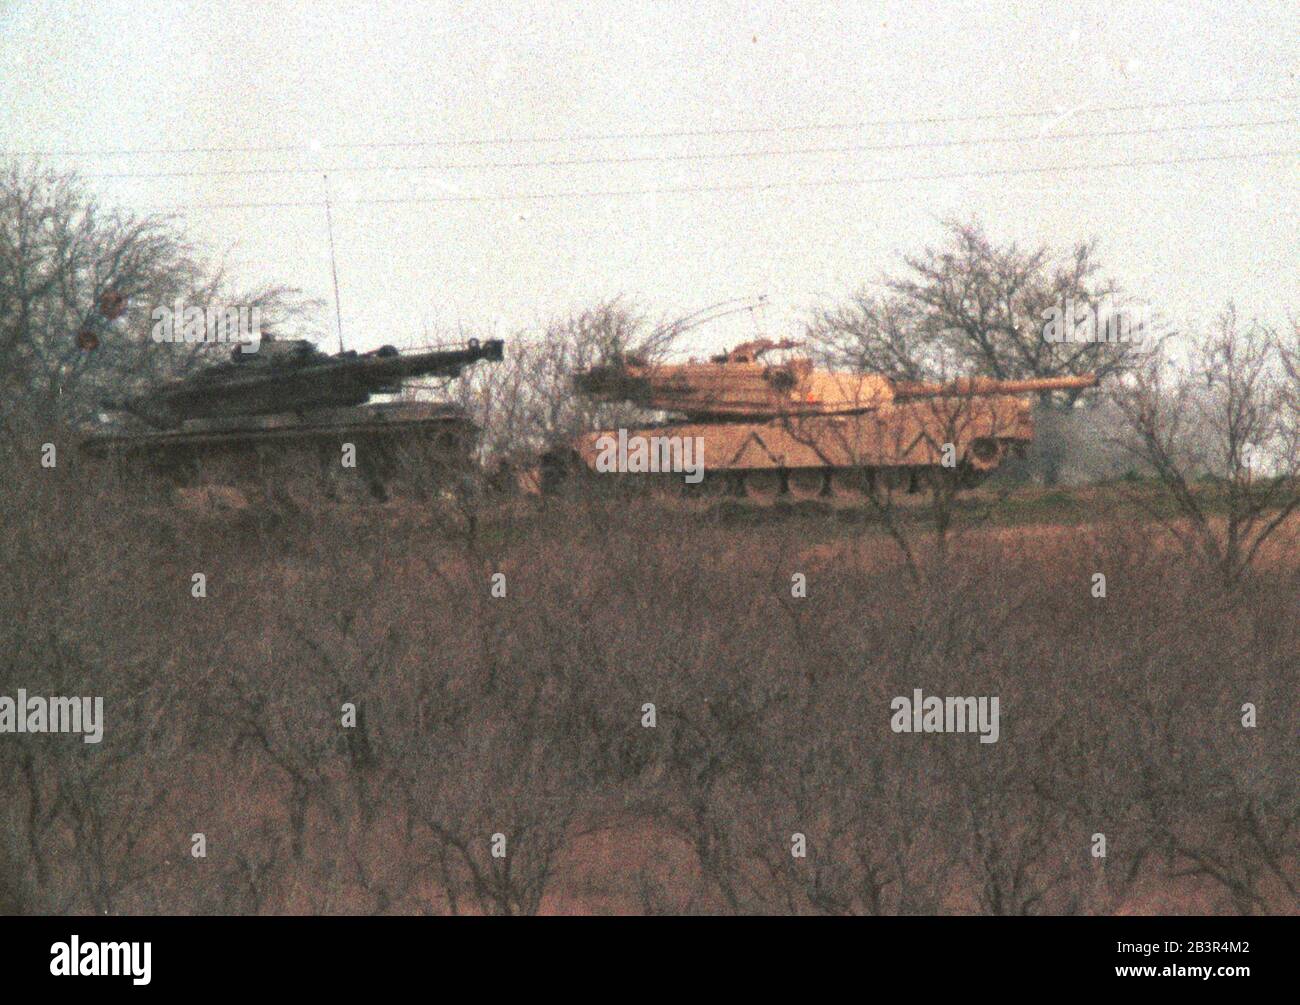 Waco Texas USA, 1993. März: Panzer der US-Armee aus dem nahe gelegenen Fort Hood, Texas, patrouillieren mitten in einem 51-tägigen Patrouillenstand zwischen Mitgliedern der religiösen Sekte und Bundesagenten im Umkreis des Branch Davidian-Geländes außerhalb von Waco. ©Bob Daemmrich Stockfoto